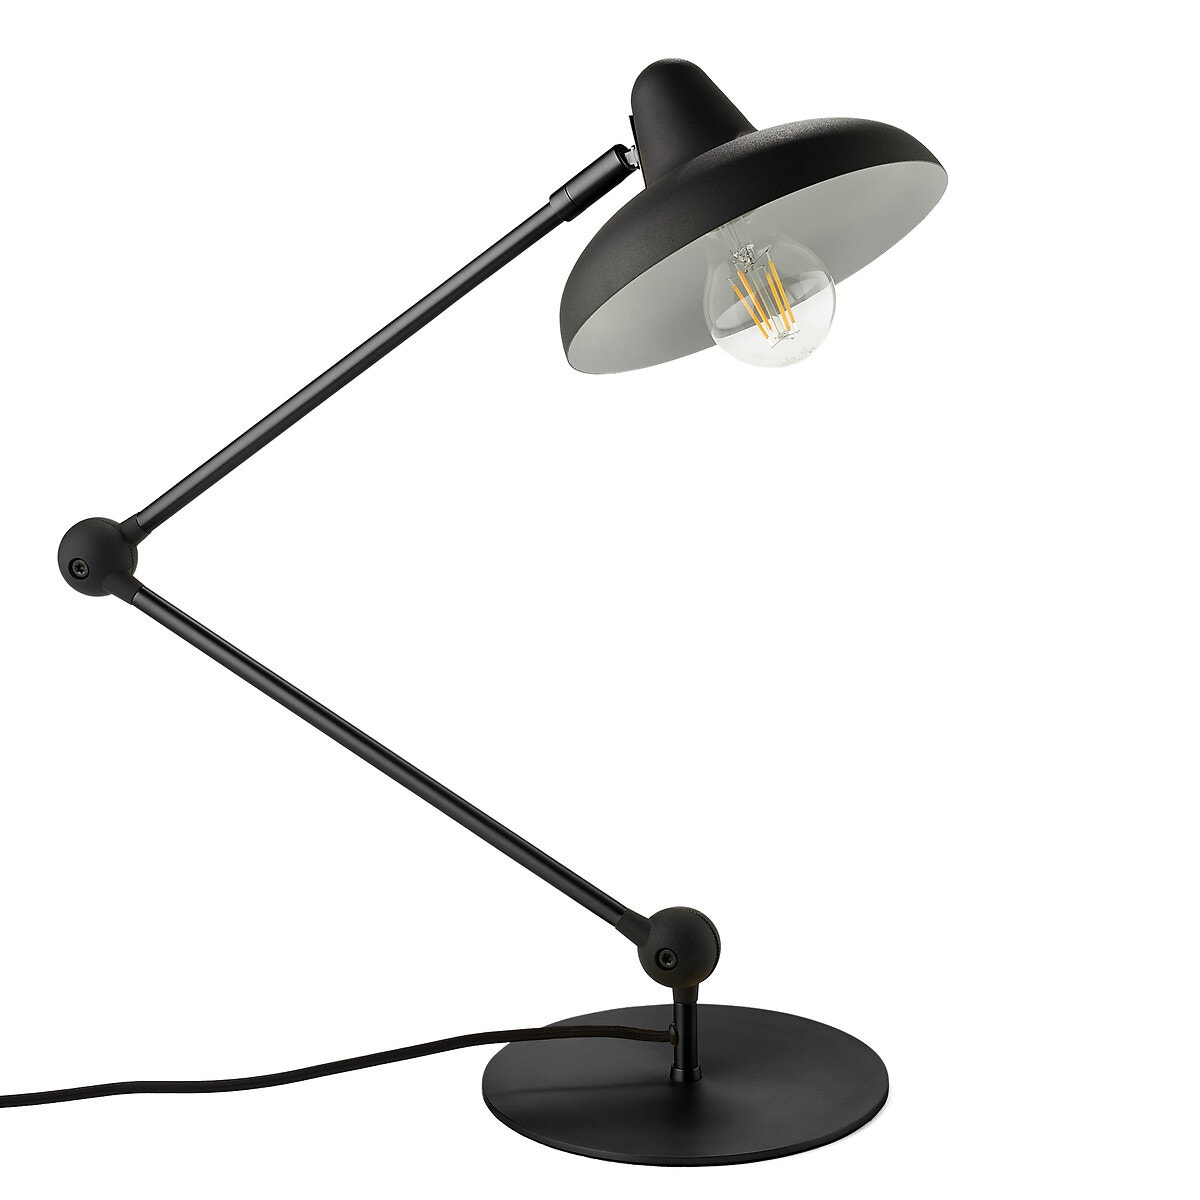 Lampe à poser design led avec base arrondie en métal et boule